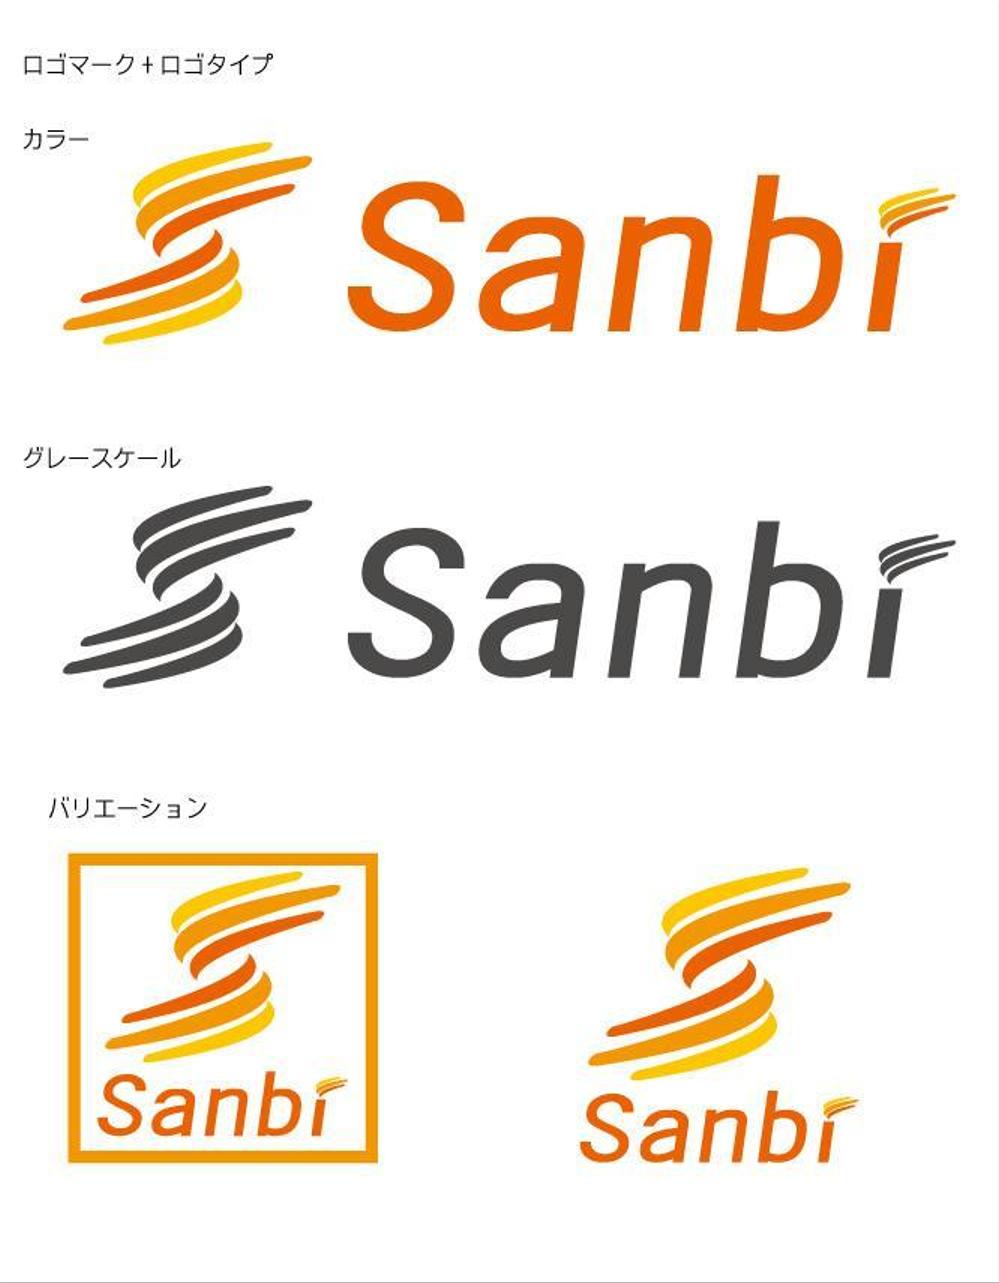 Sanbi.jpg